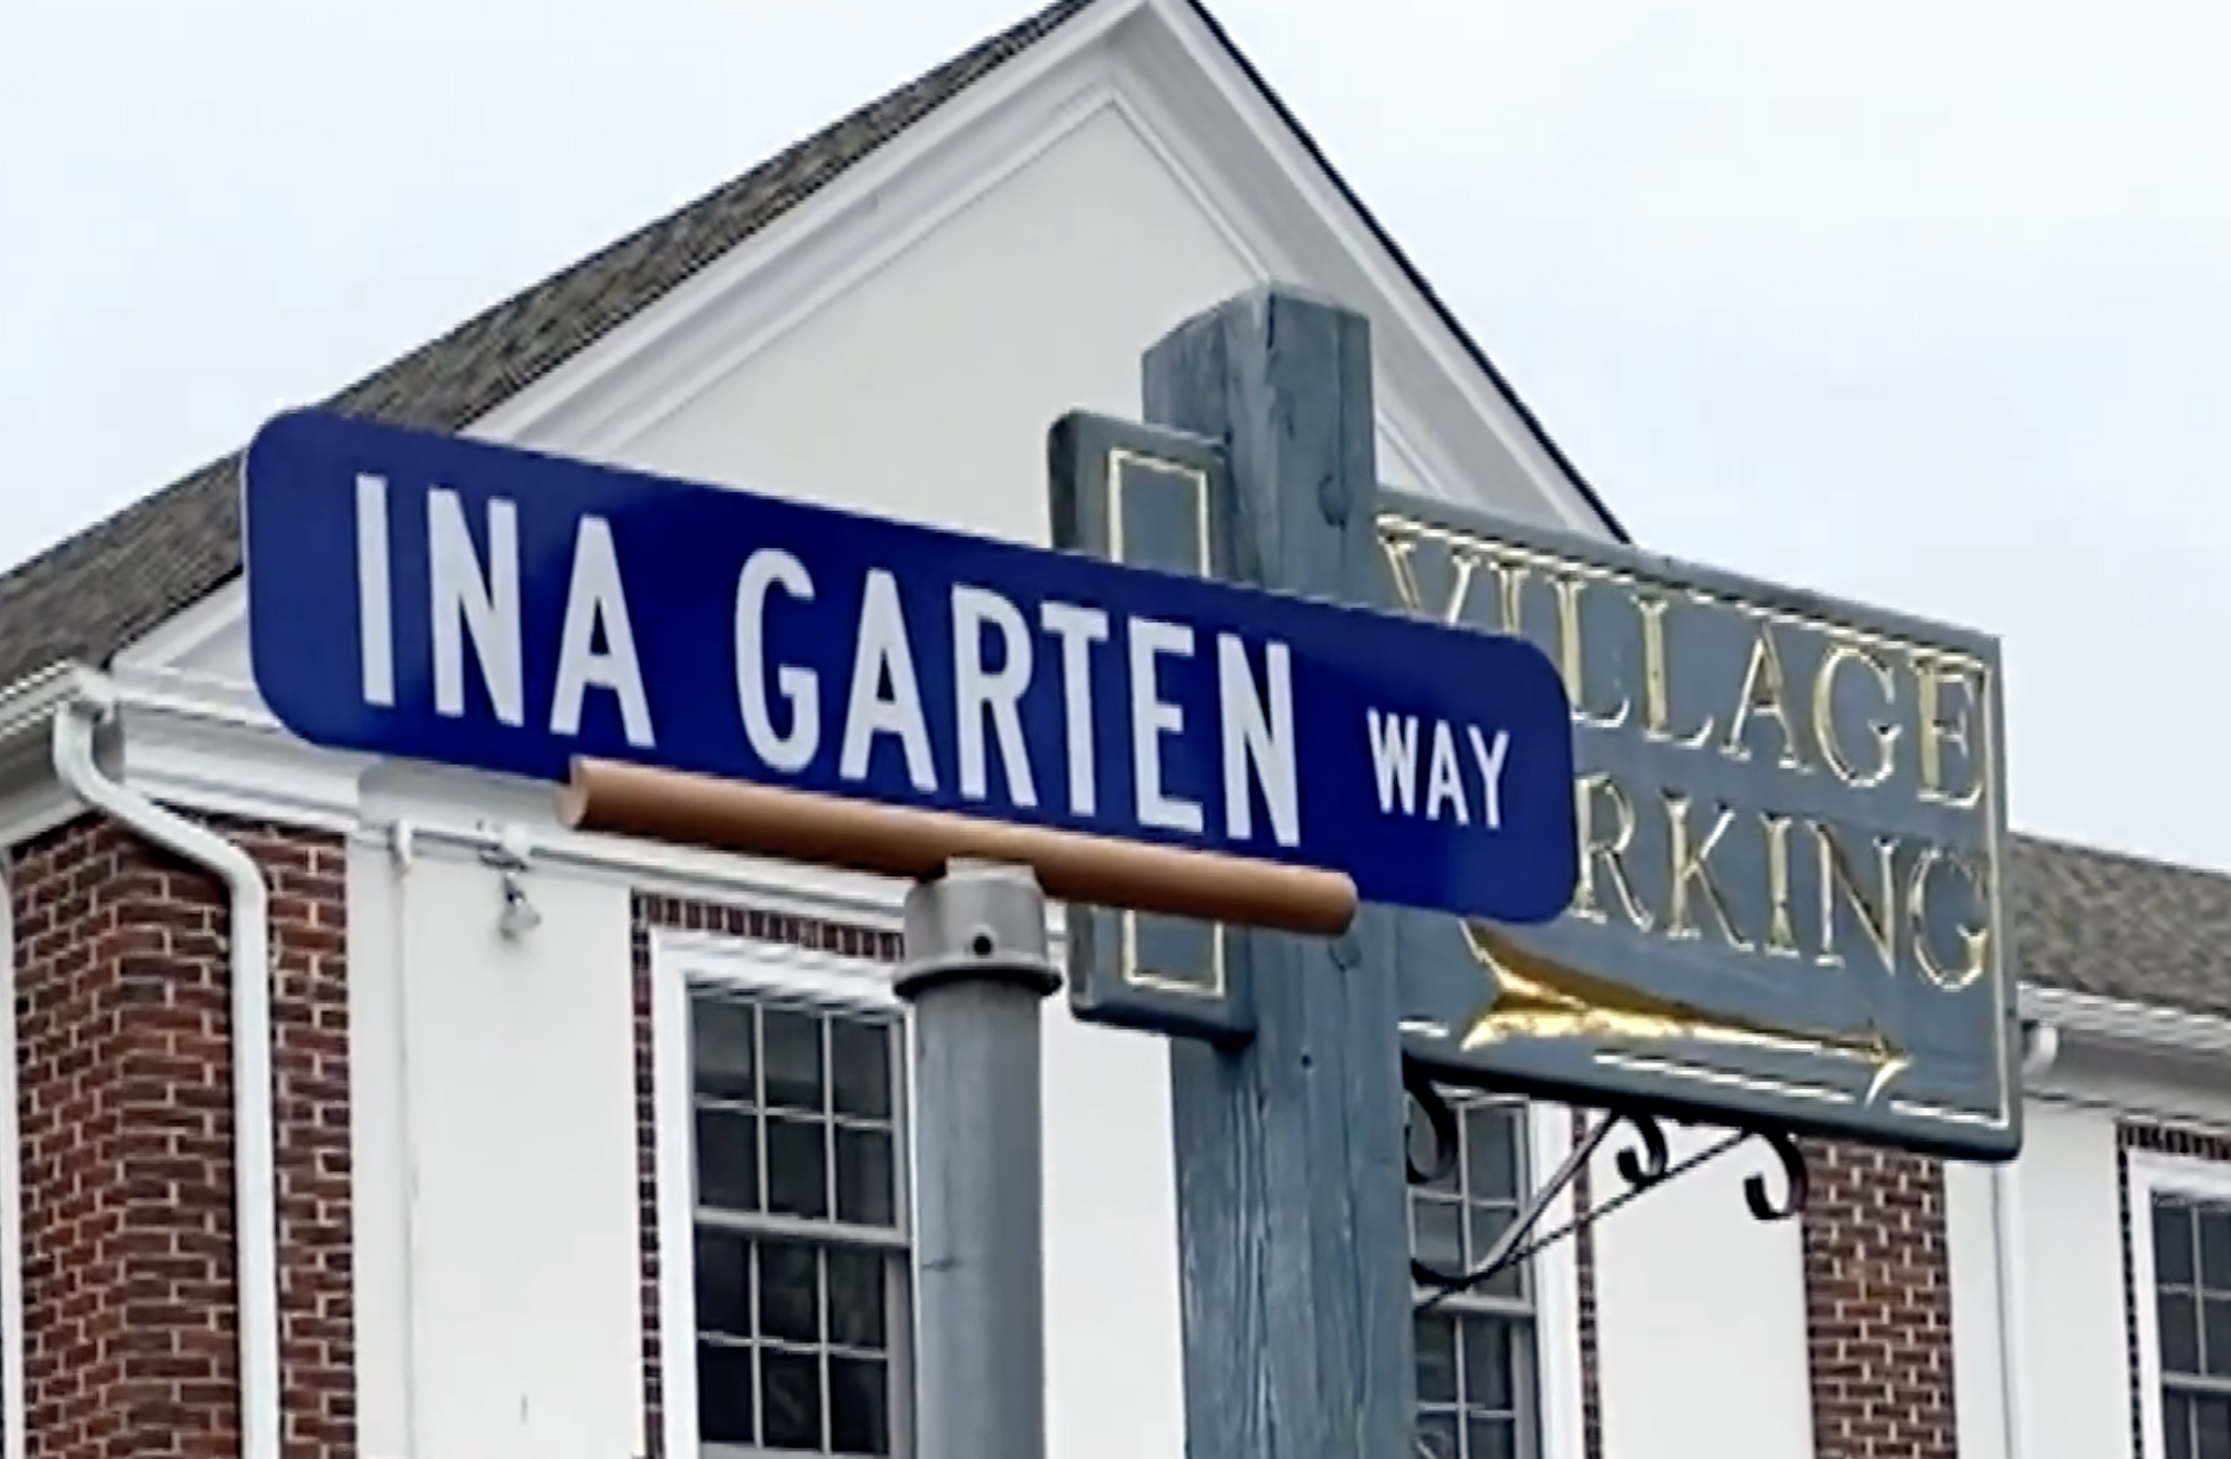 Ina Garten Way sign